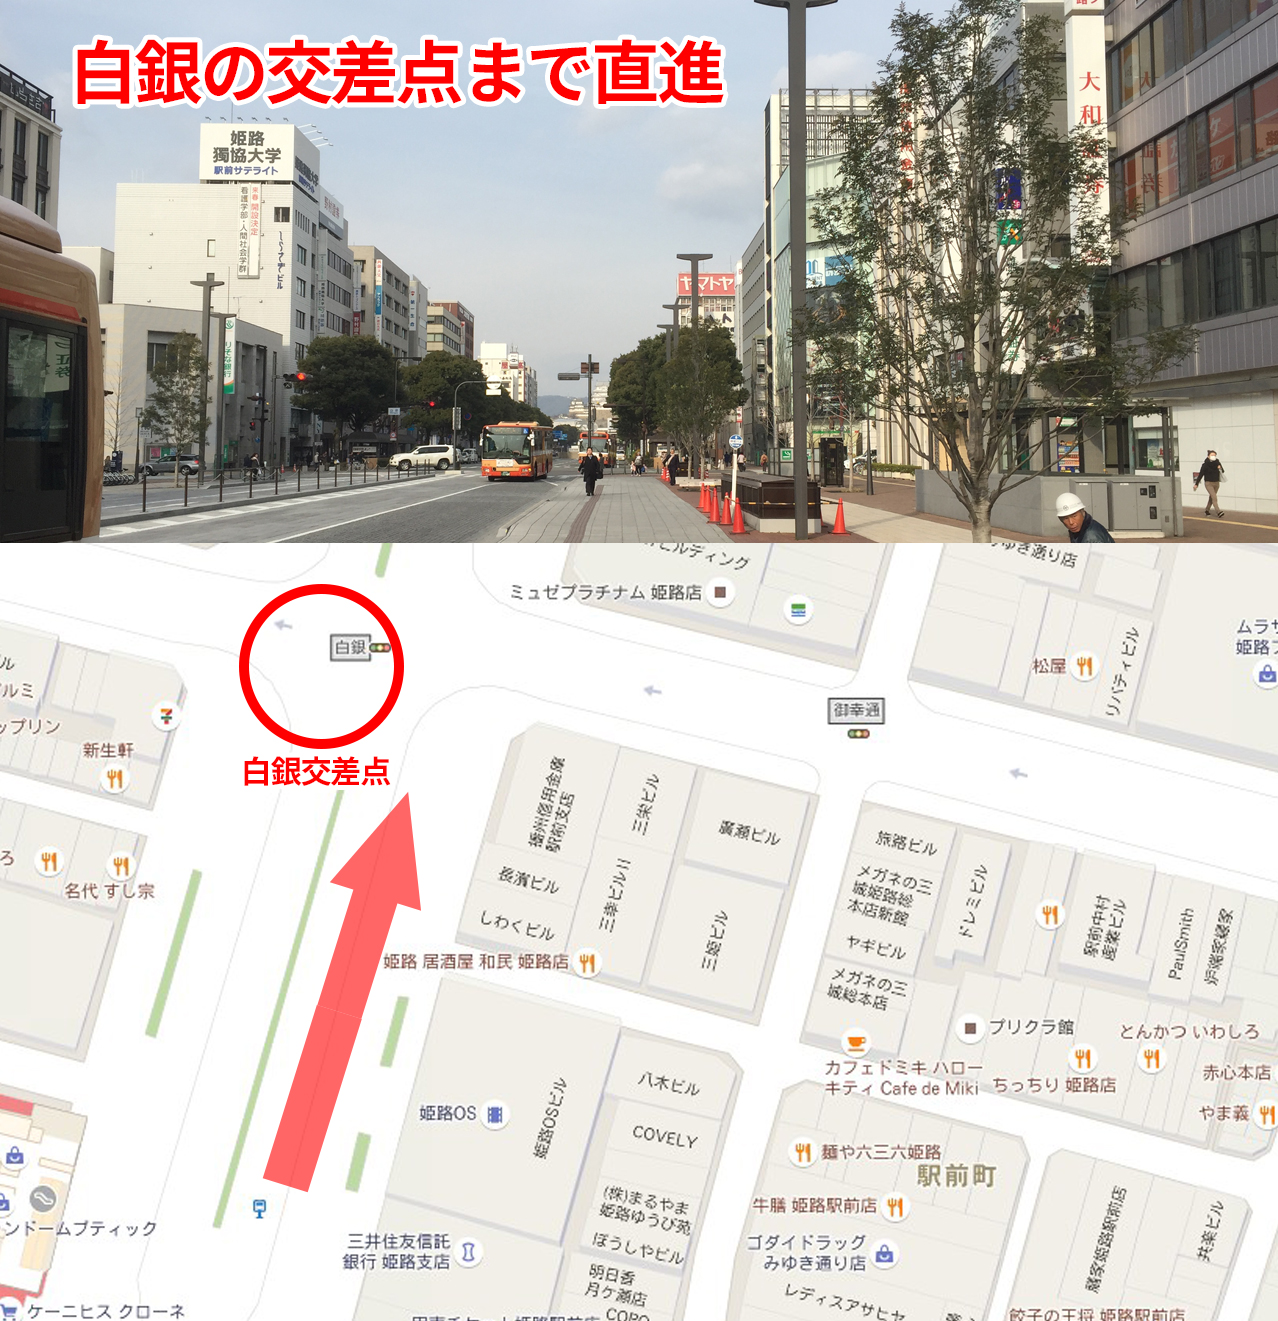 【順路3】
「白銀」交差点まで直進します。
姫路城方面にまっすぐ進みます。道路は右側を歩いてください。まっすぐ行くと「白銀」という交差点があります。